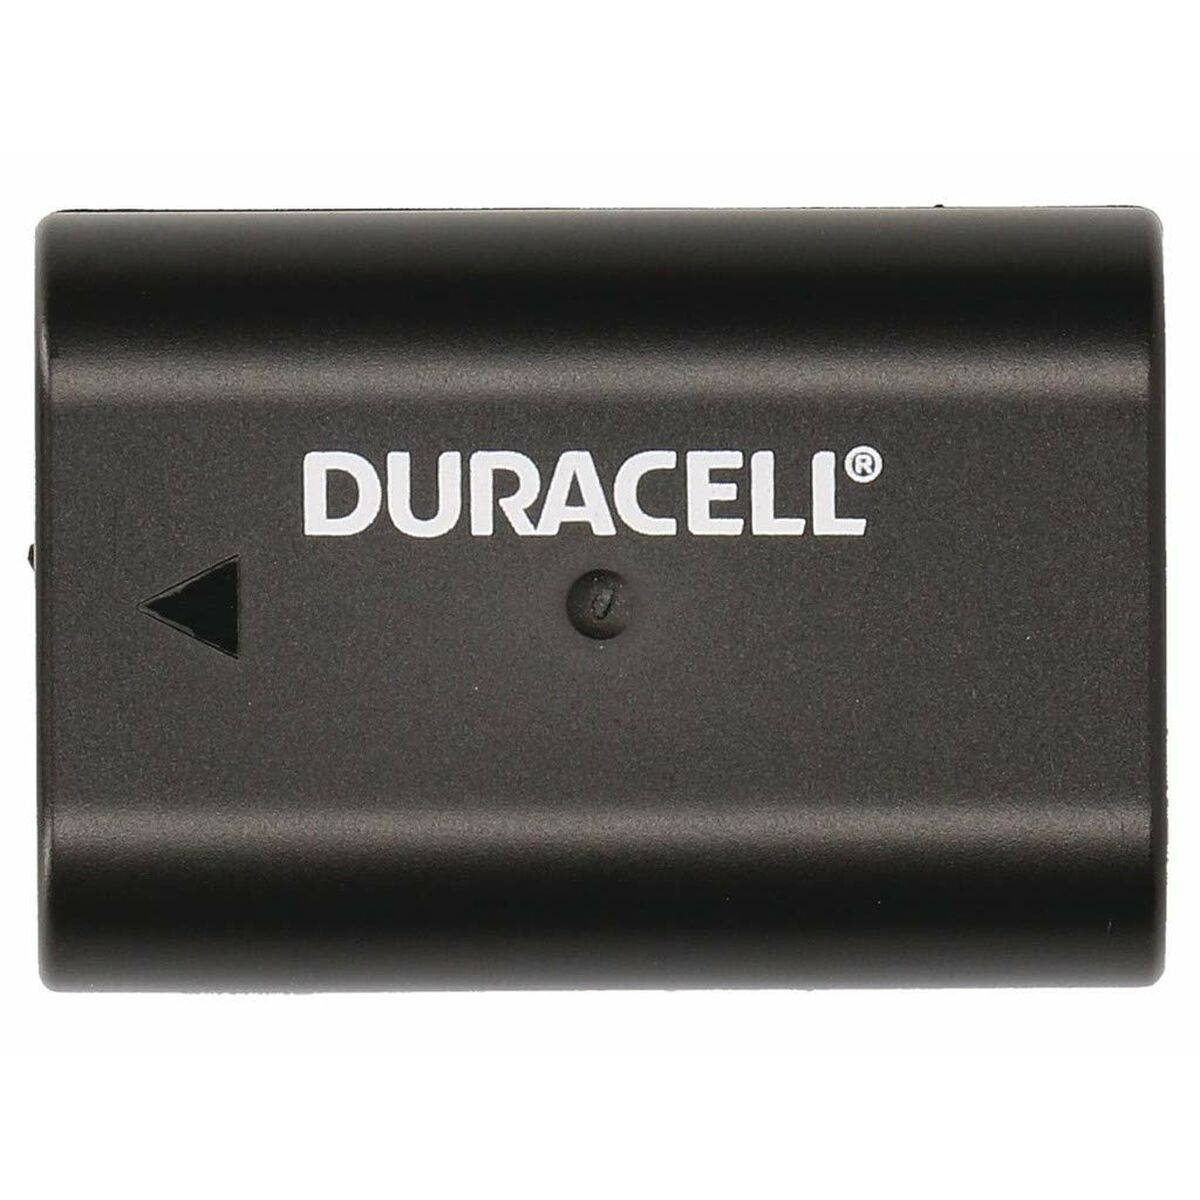 Kamerabatterie DURACELL DRPBLF19 (Restauriert A)